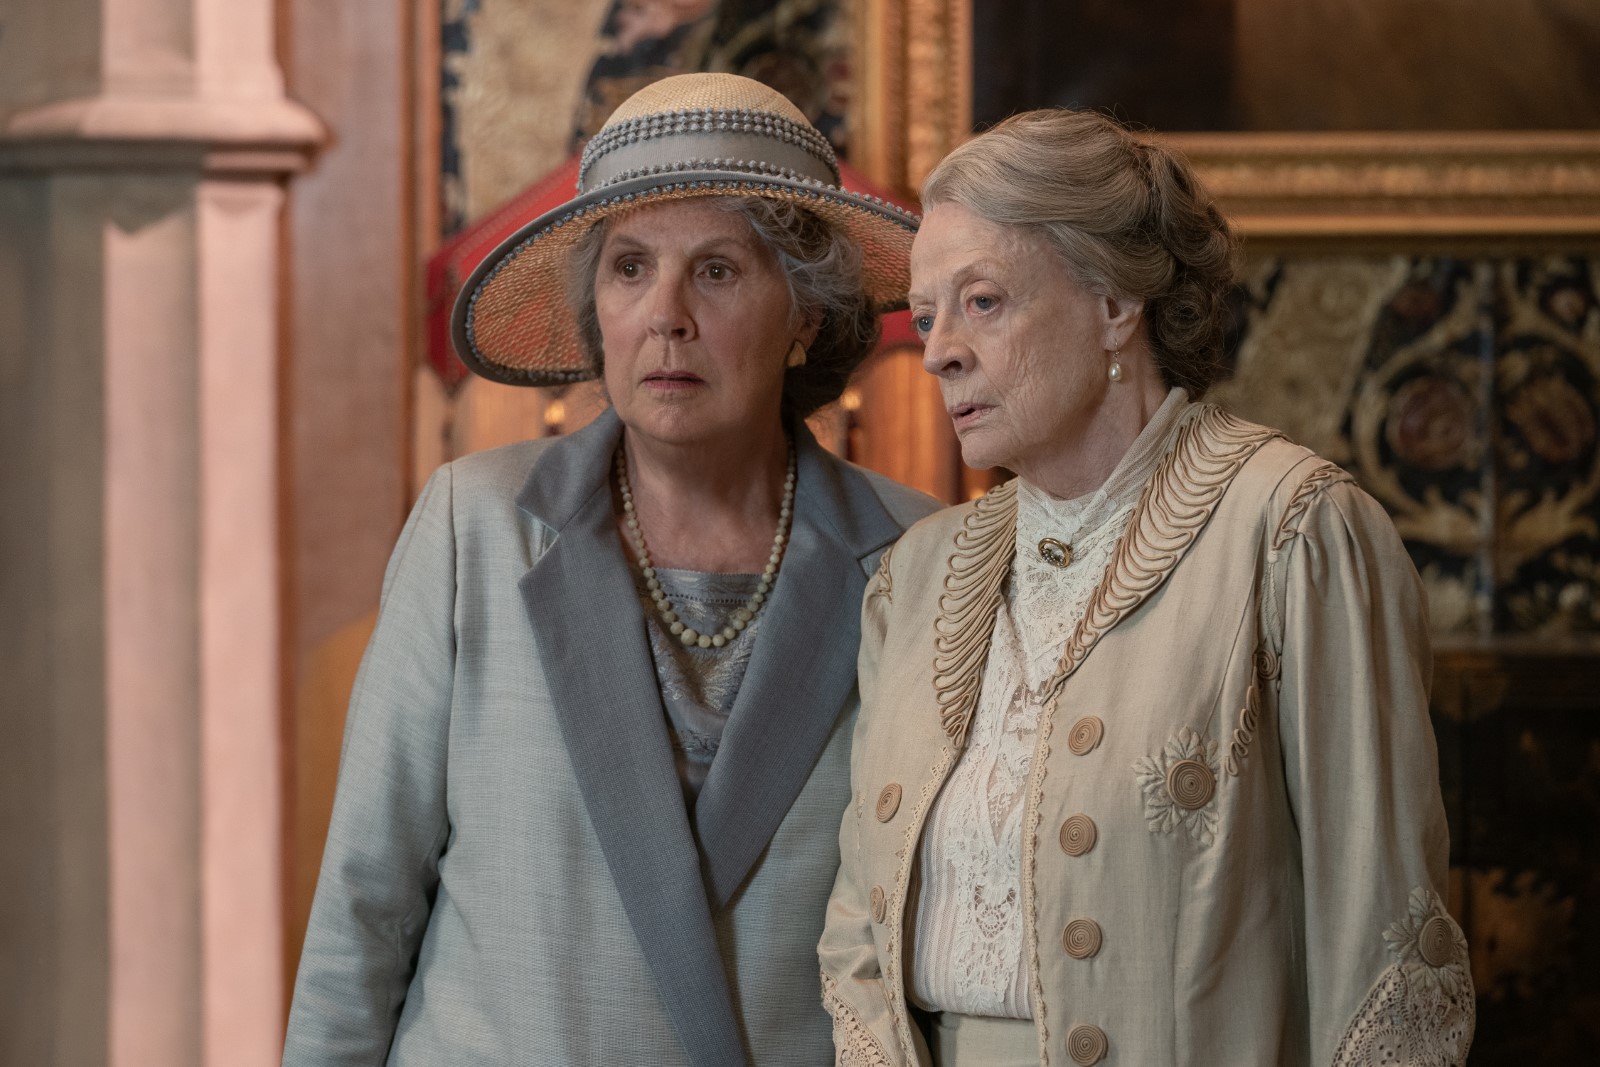 Szenenbild 9 vom Film Downton Abbey 2: Eine neue Ära 